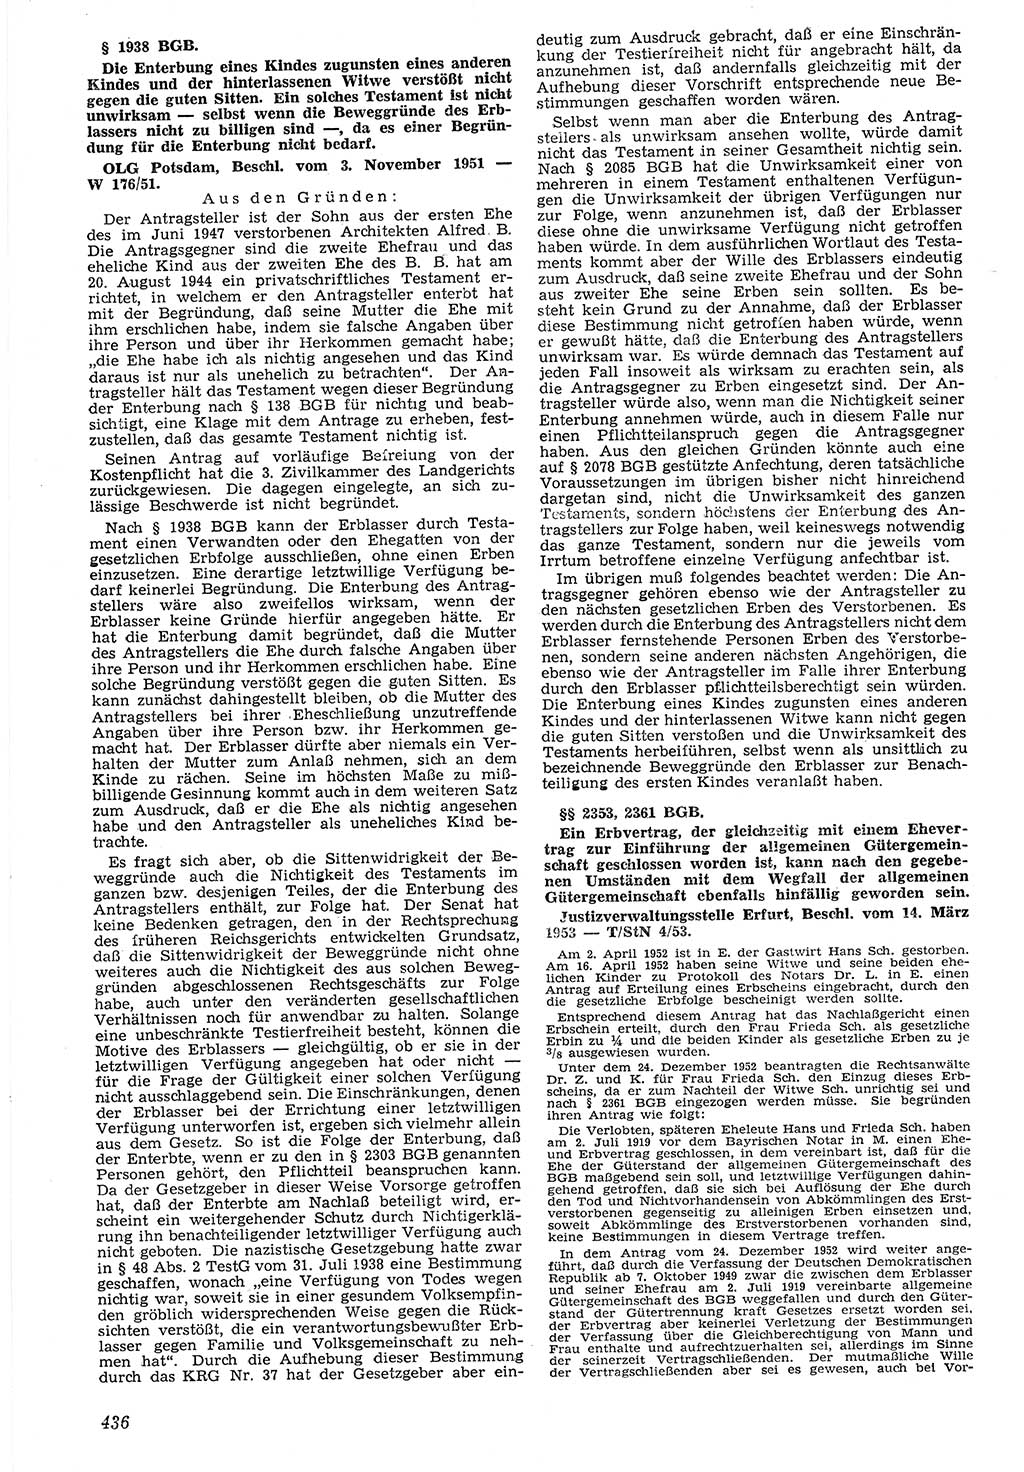 Neue Justiz (NJ), Zeitschrift für Recht und Rechtswissenschaft [Deutsche Demokratische Republik (DDR)], 7. Jahrgang 1953, Seite 436 (NJ DDR 1953, S. 436)